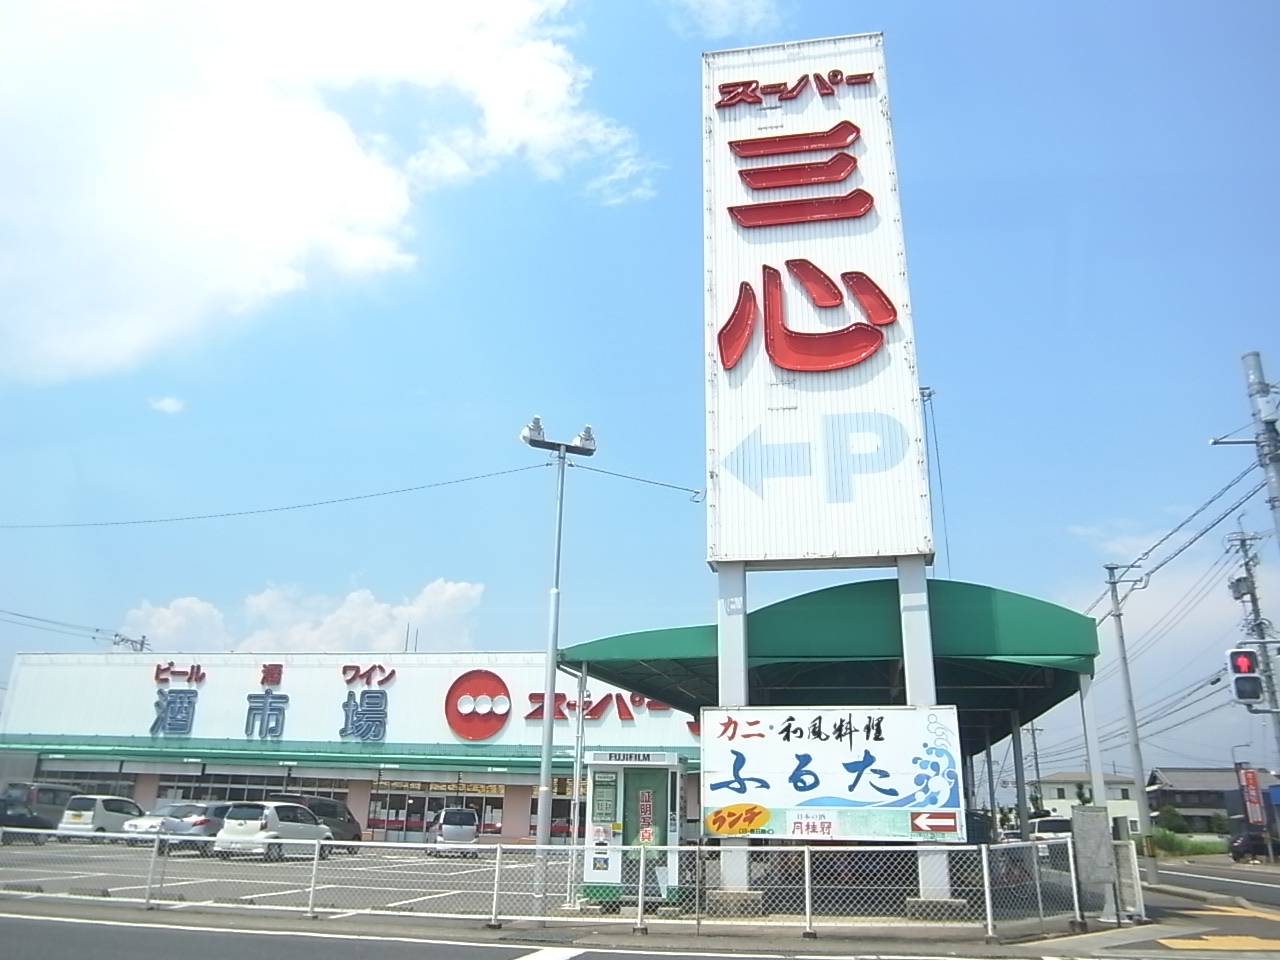 Supermarket. 1933m until Super Sankokoro Marunouchi (super)